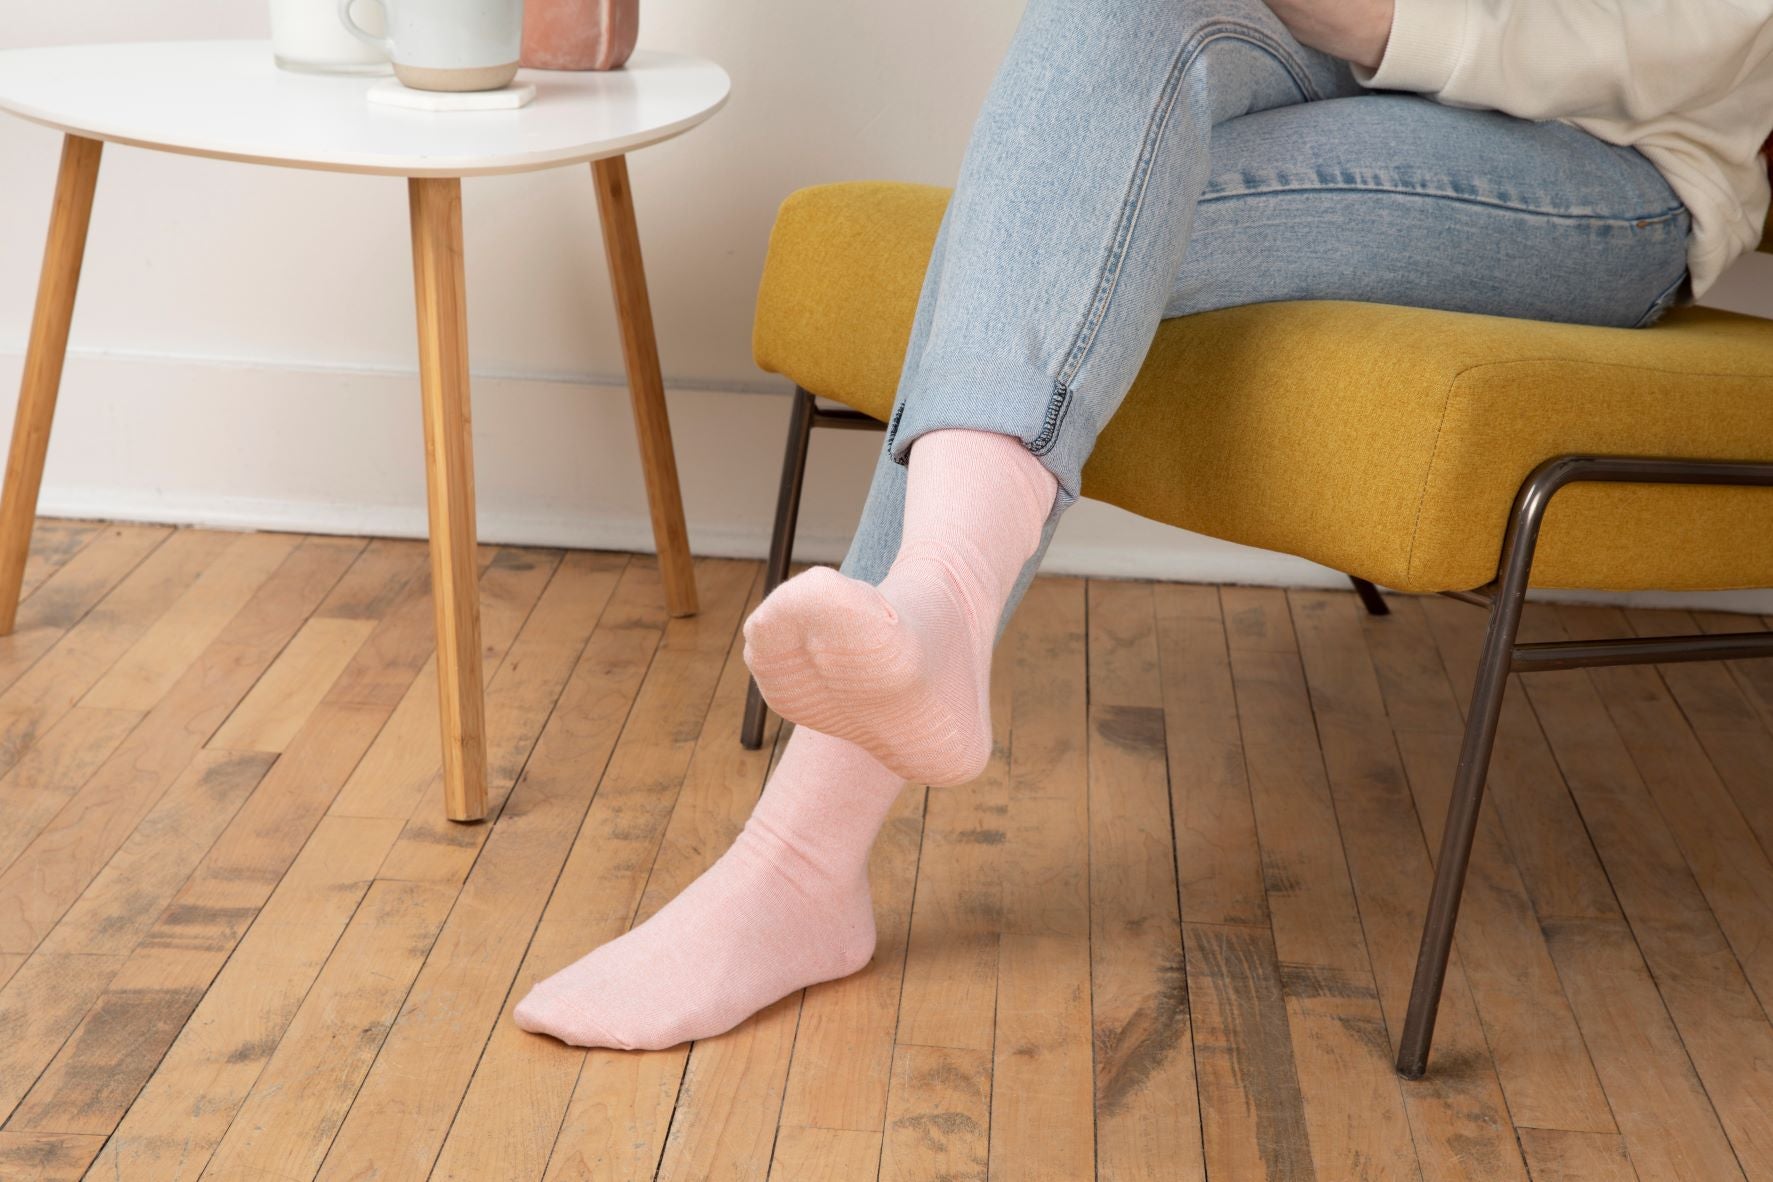 Buy Gripjoy Original Crew Grip Socks - Non Slip Socks for Women